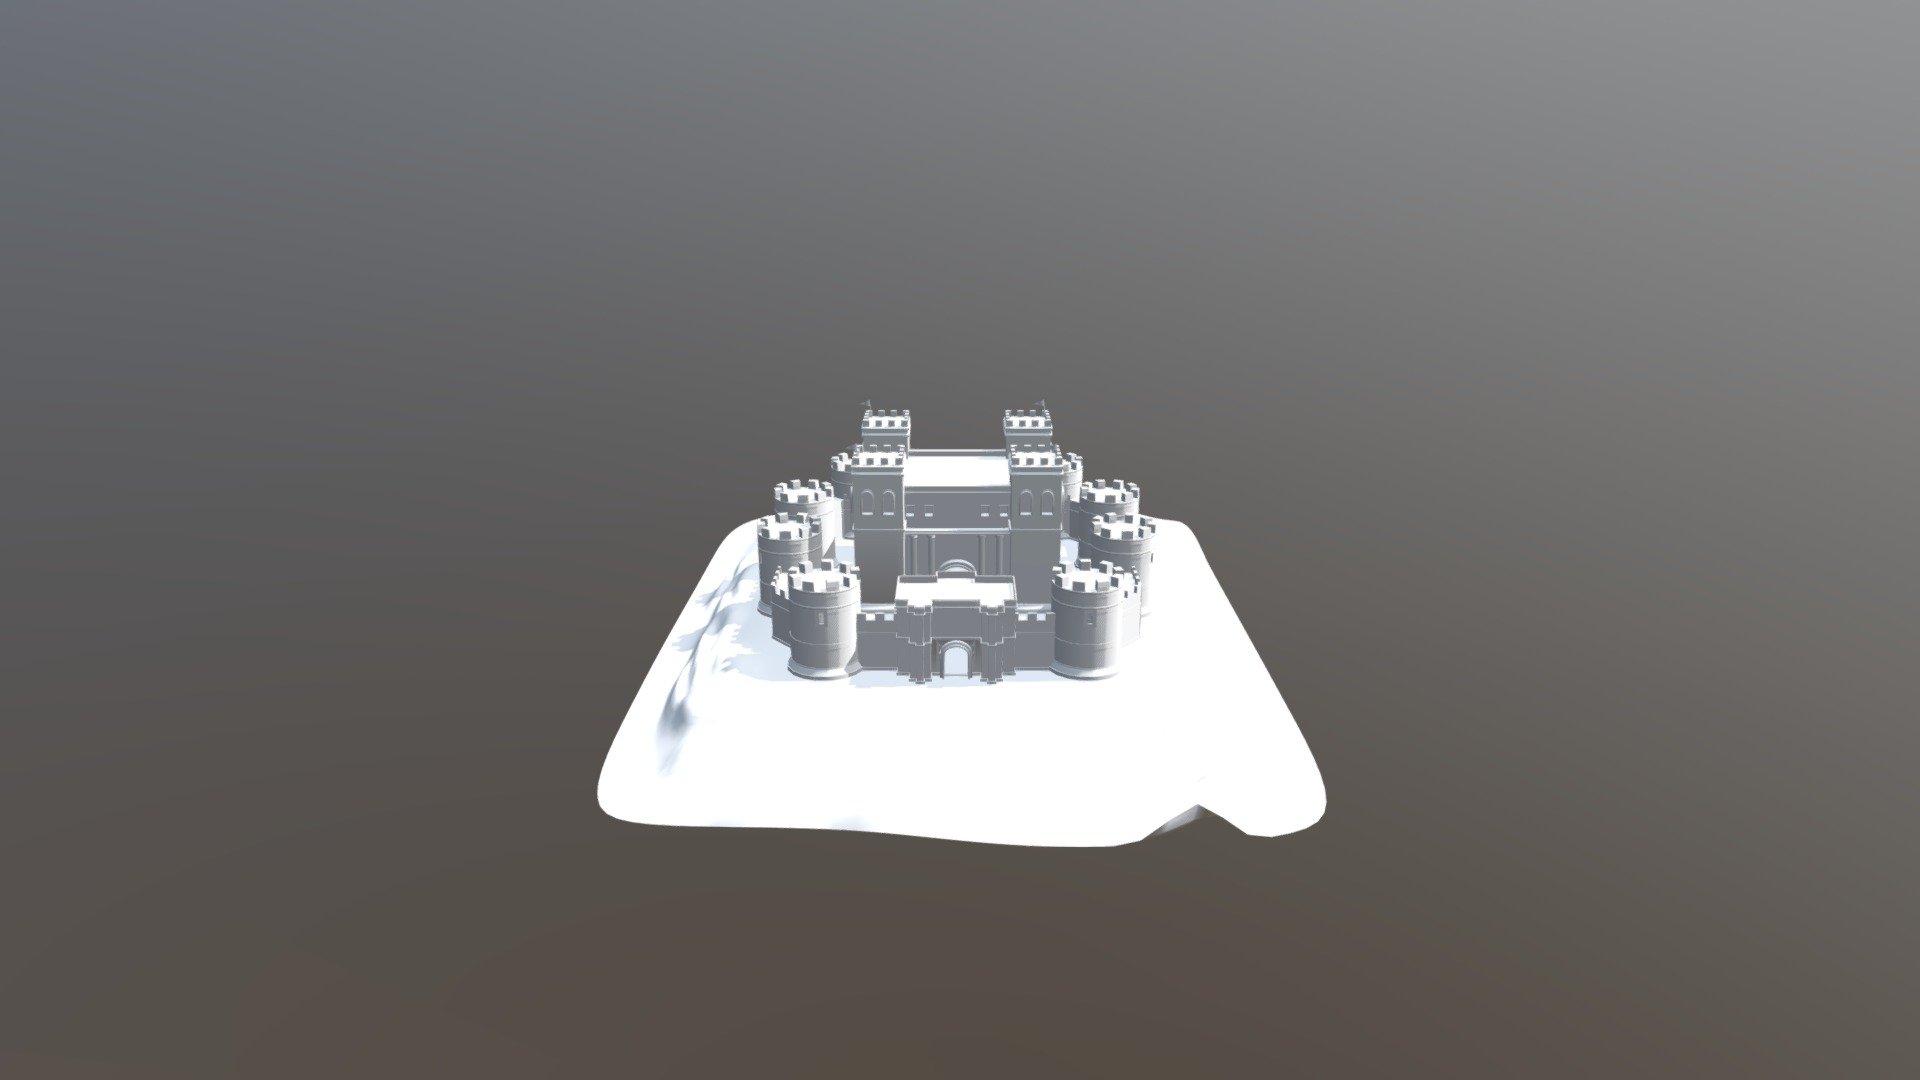 Plain Castle - Castle - Download Free 3D model by galuh.londong 3d model